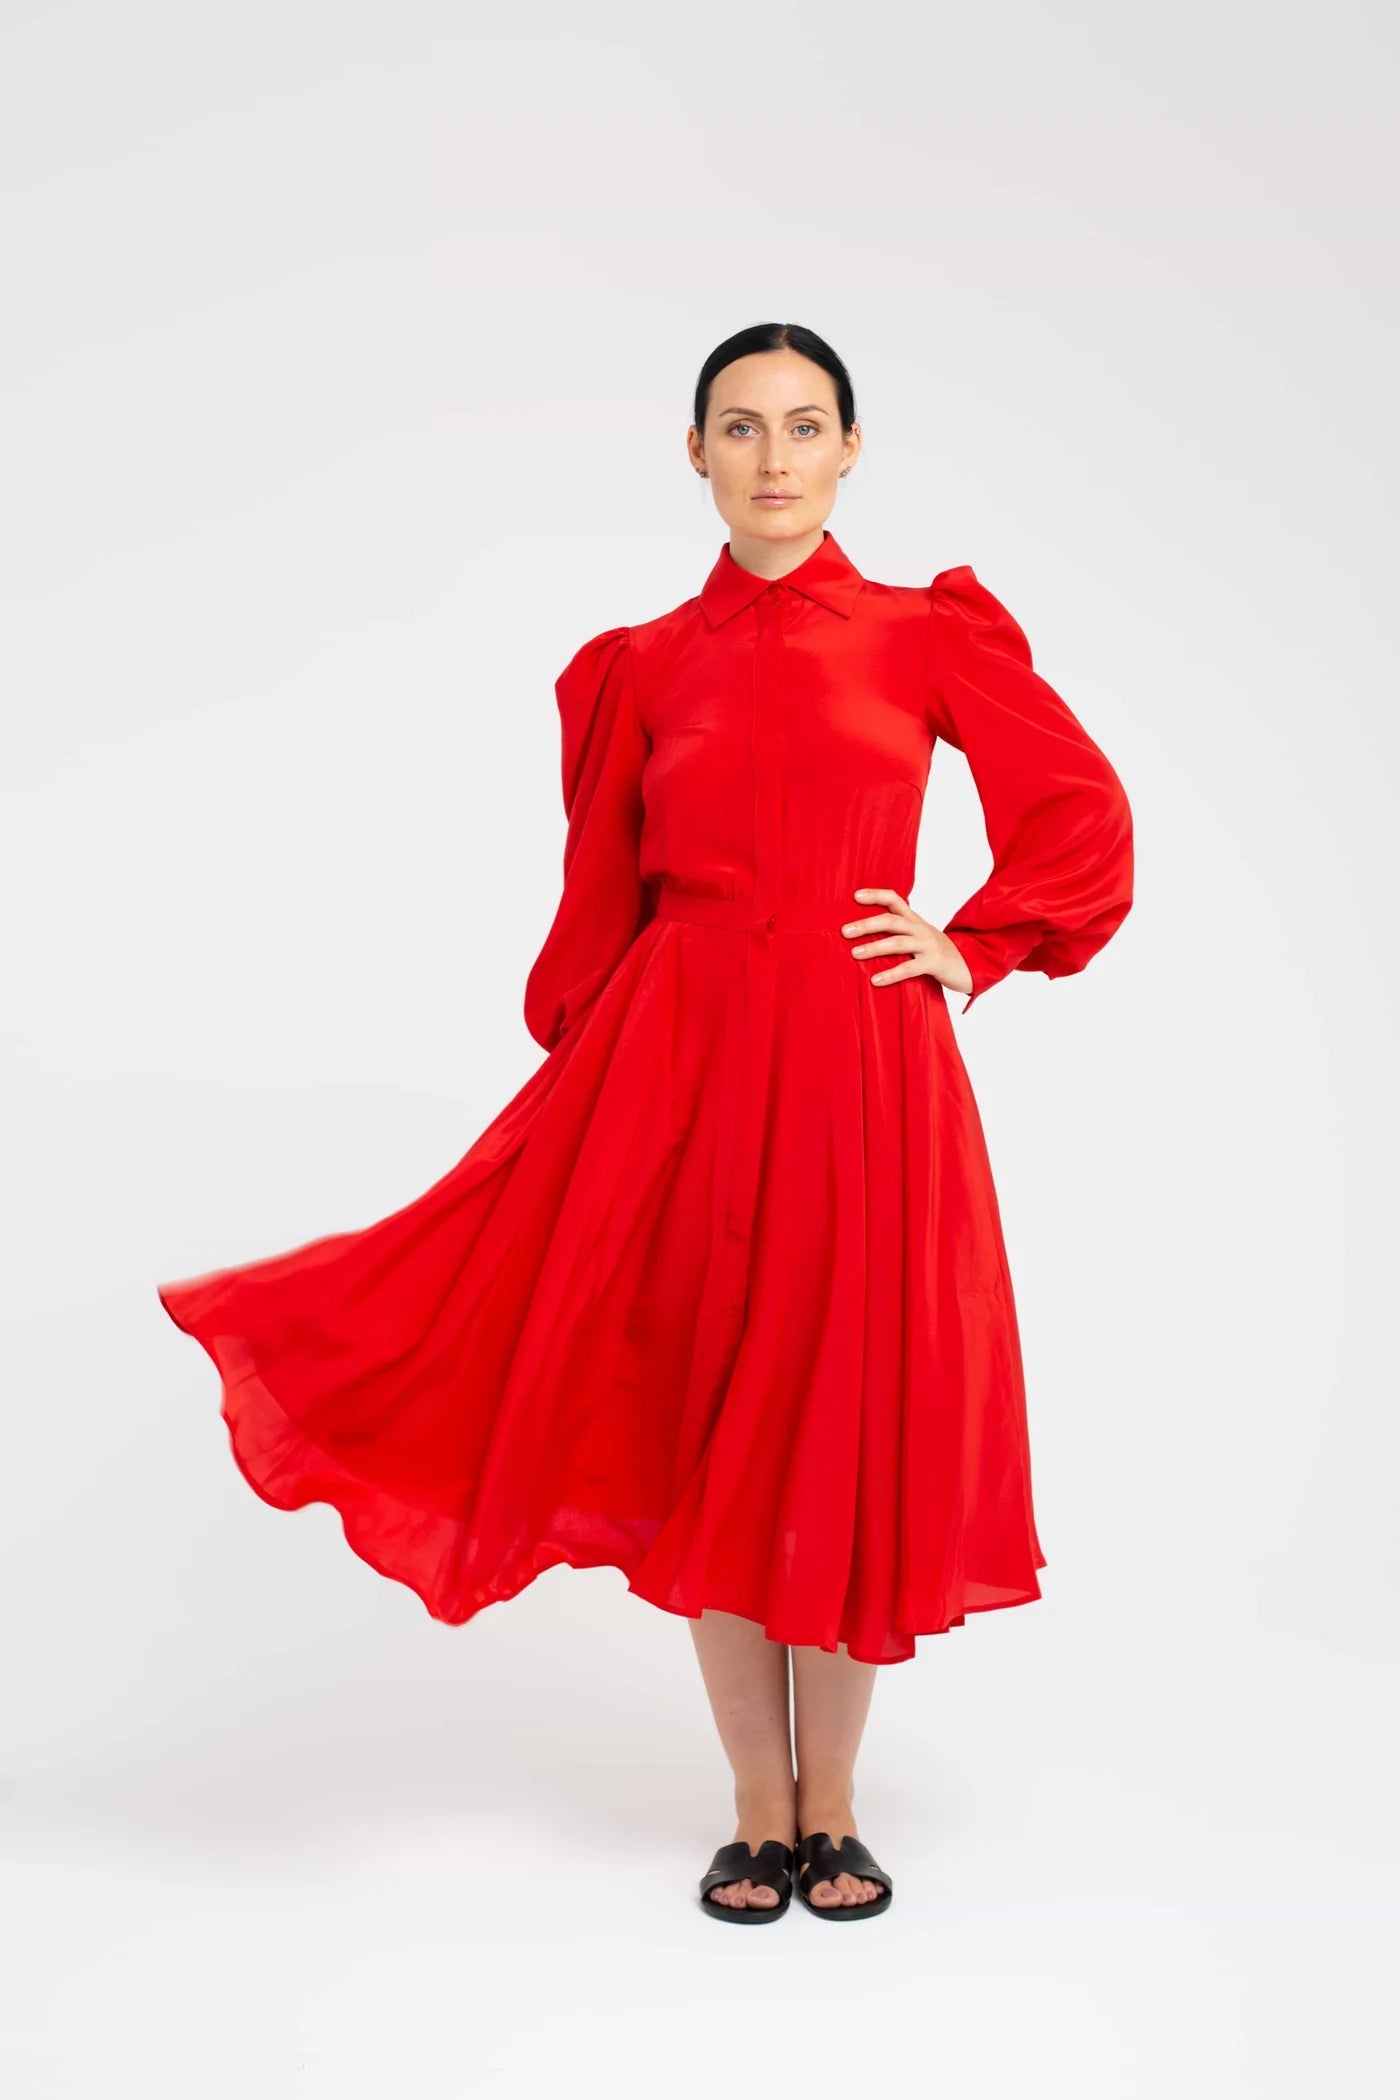 Desideria Rosso Dress by Lavi